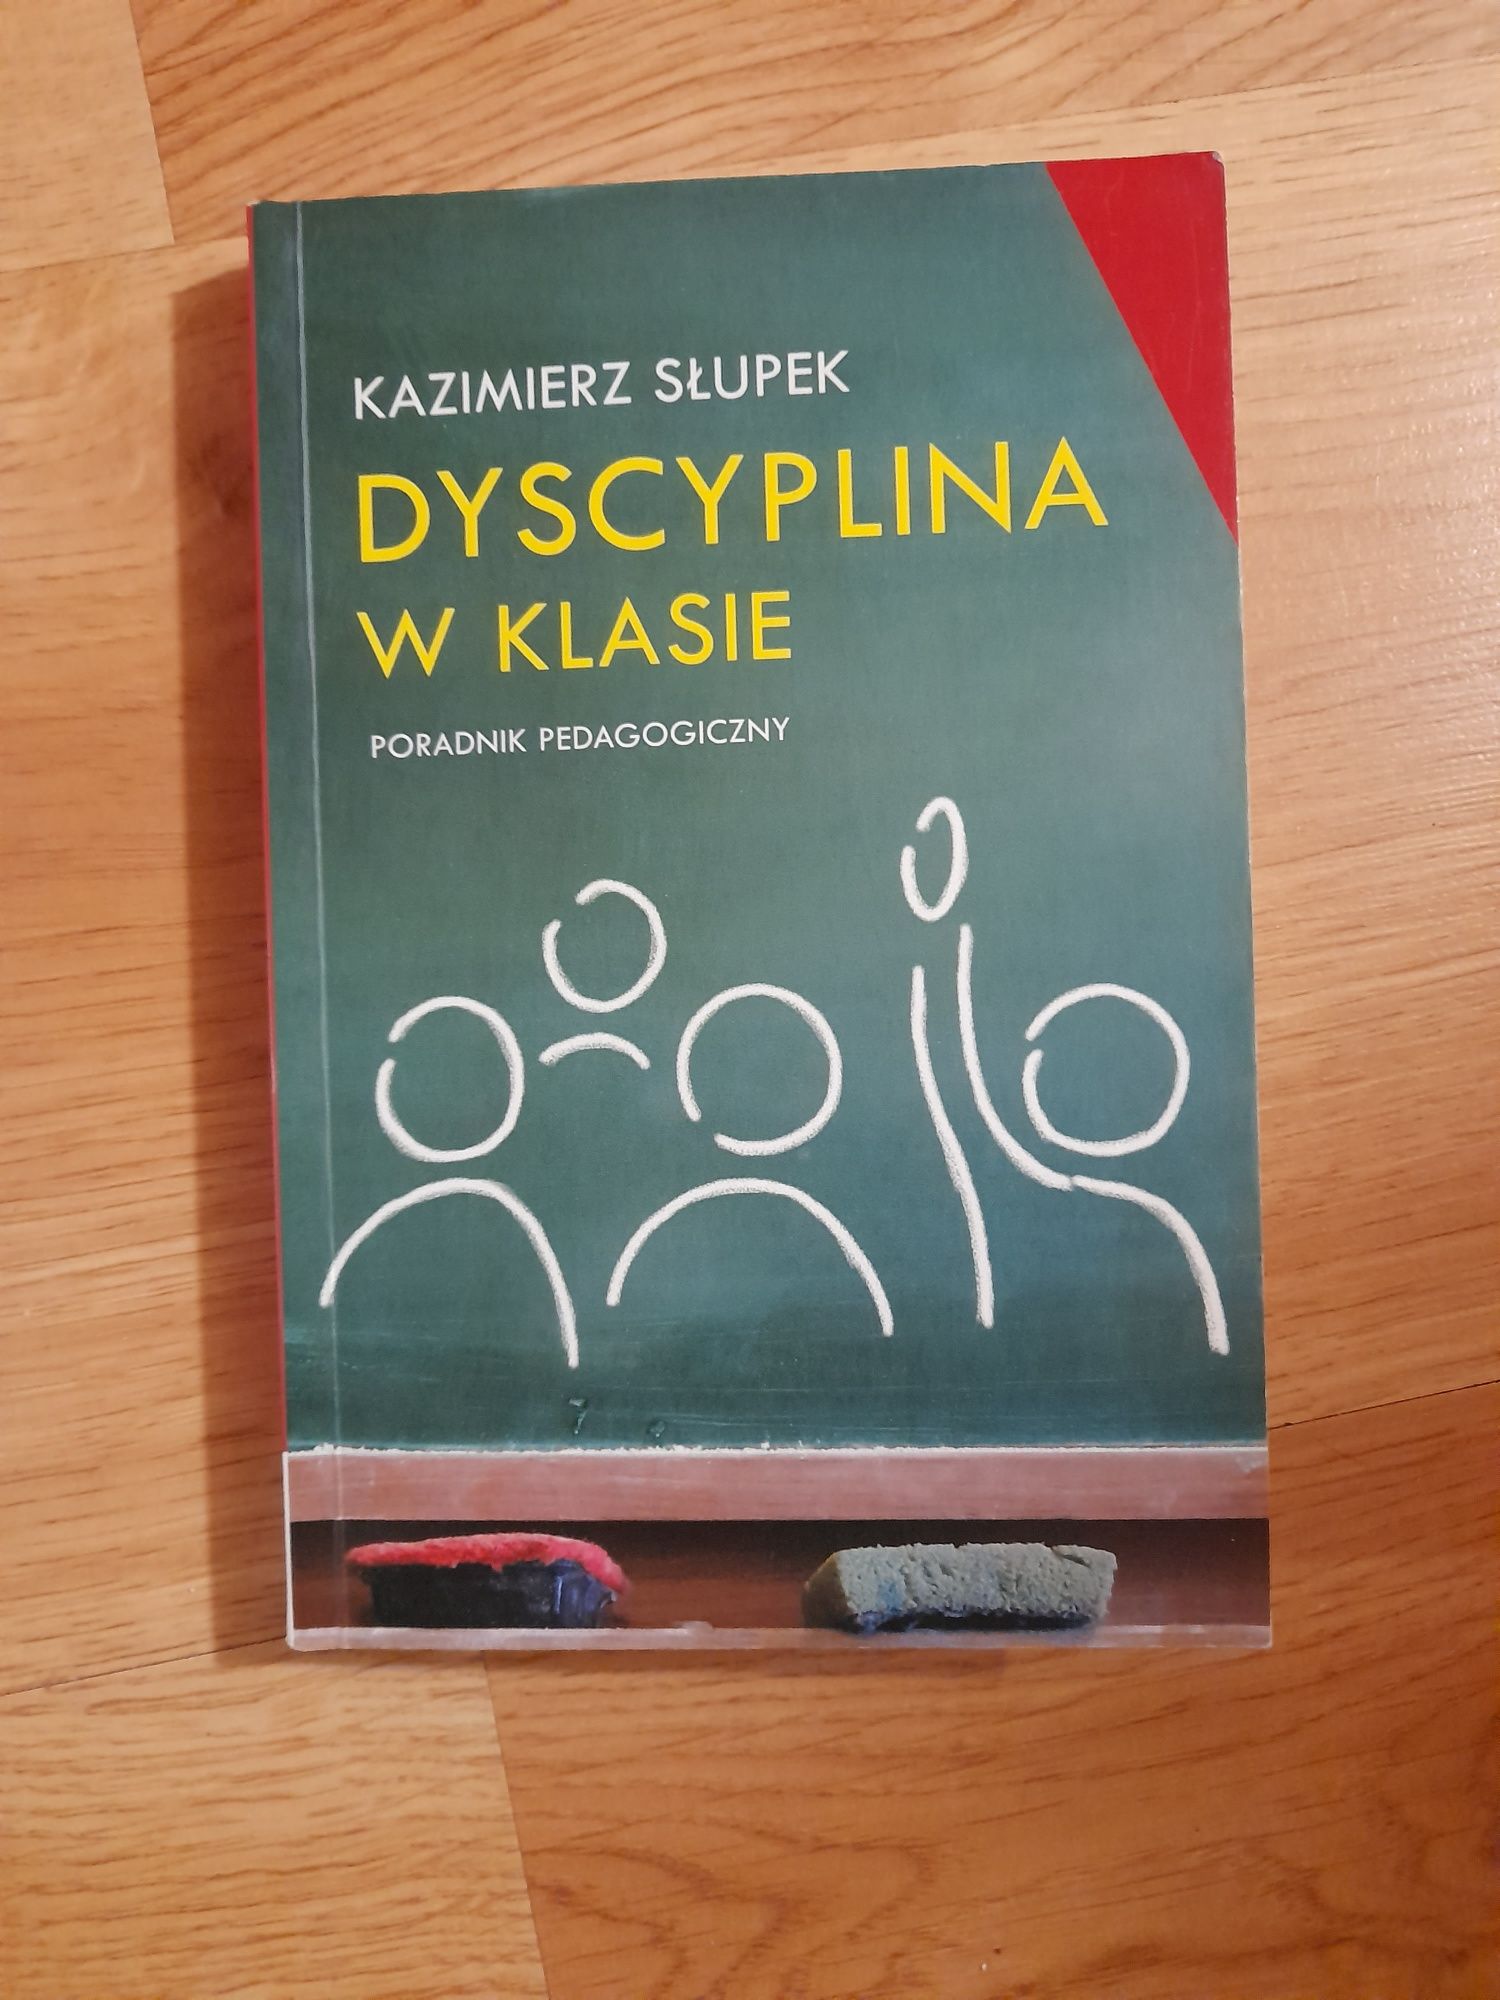 Dyscyplina w klasie, K. Słupek, poradnik dla nauczyciela